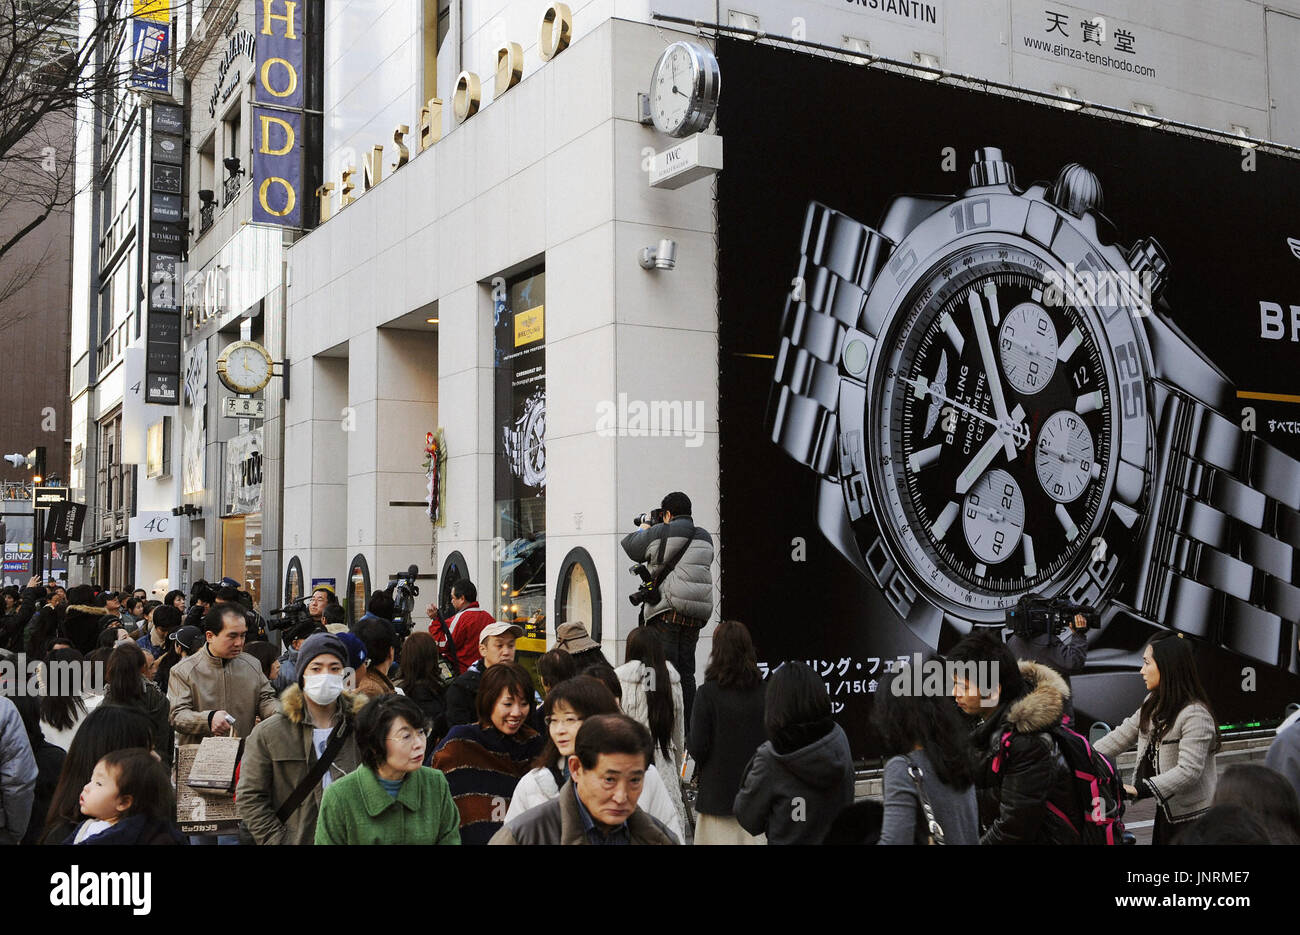 Tokio, Japón - Foto muestra Tenshodo, relojería y joyería en el distrito Ginza de Tokio, el 2 de enero, 2010. Alrededor de 200 relojes de gama alta por valor de unos 300 millones de yenes fueron descubiertos el mismo día que han sido robados de la tienda. (Kyodo) Foto de stock